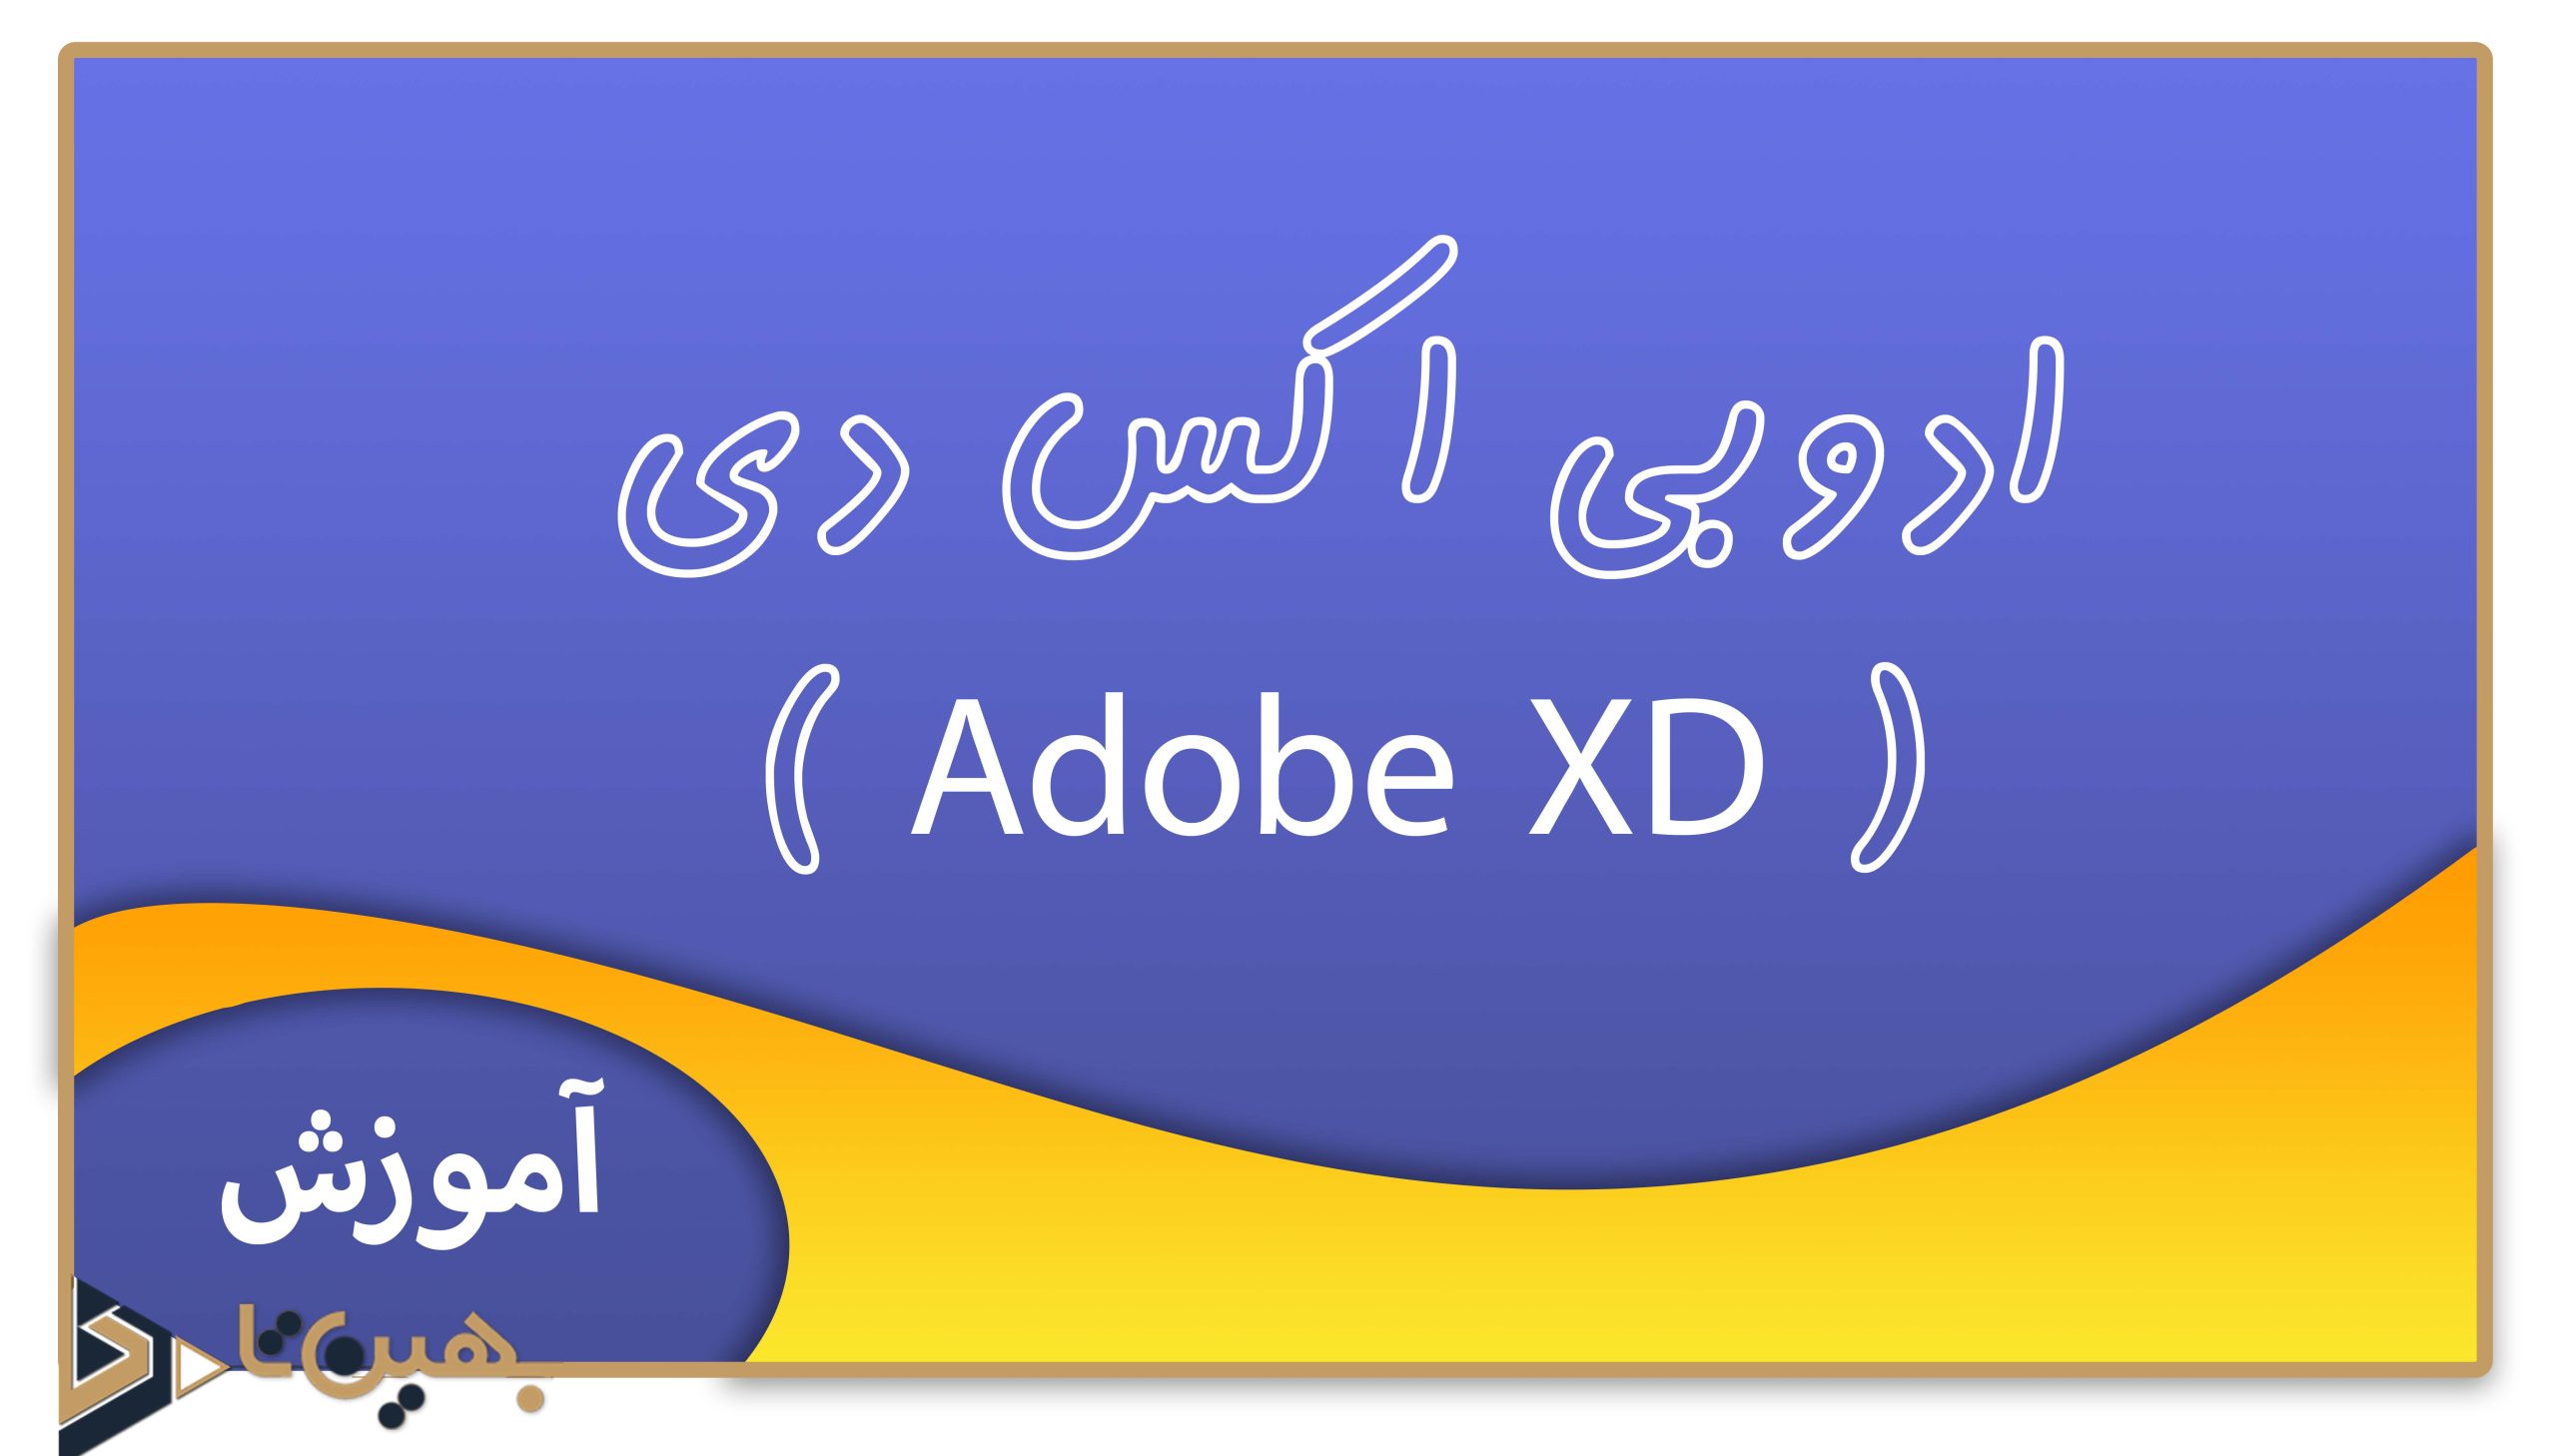 ادوبی اکس دی ( Adobe XD )